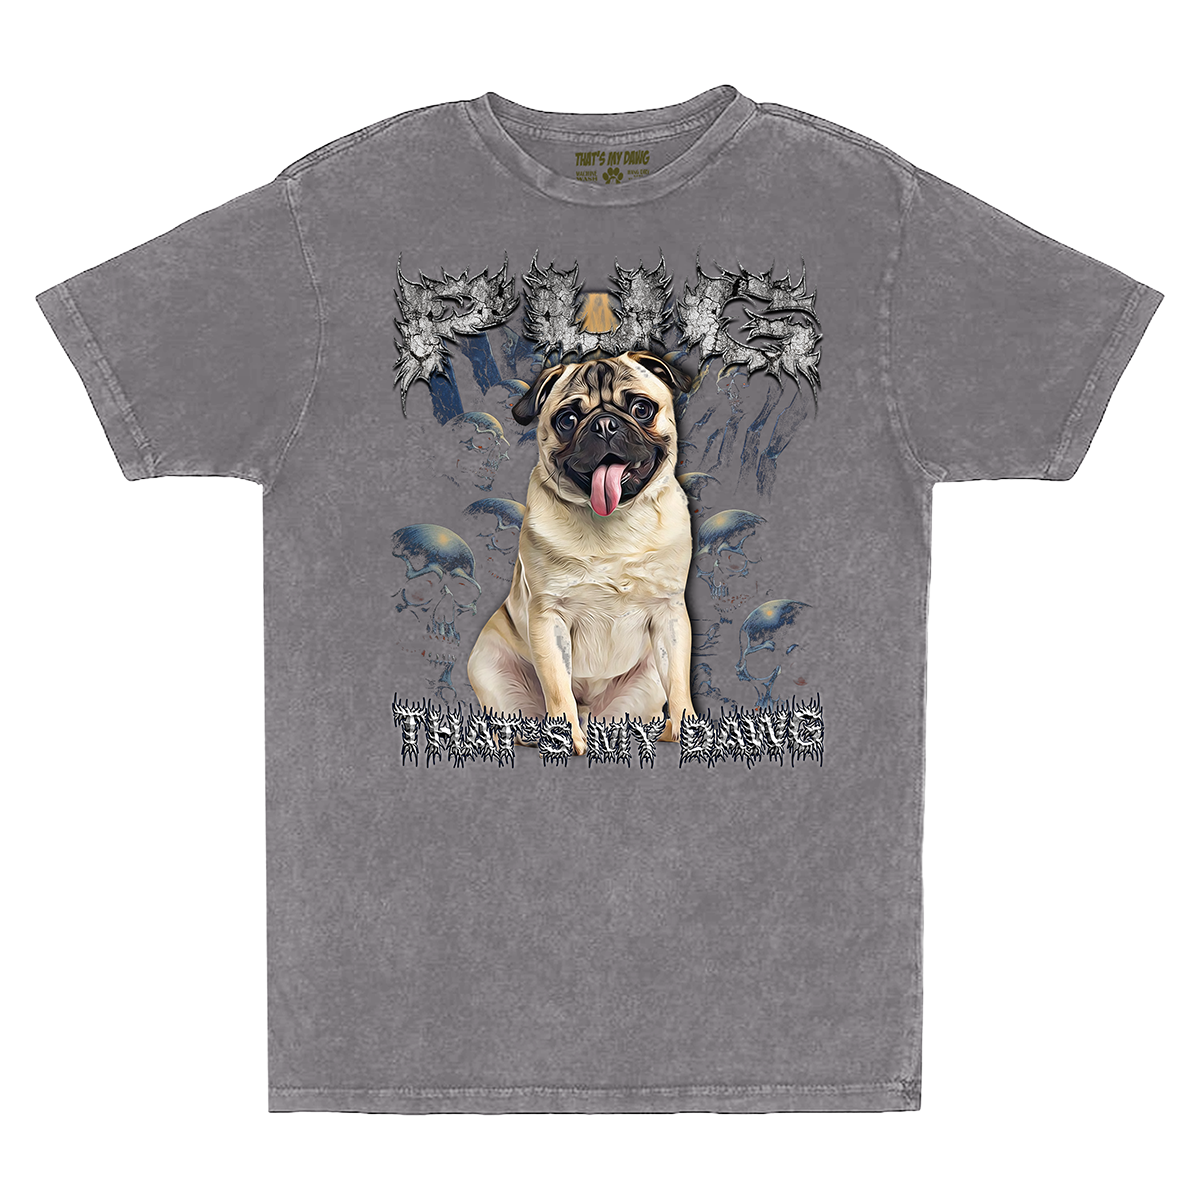 90's Style Pug Vintage T-Shirts (Zinc)